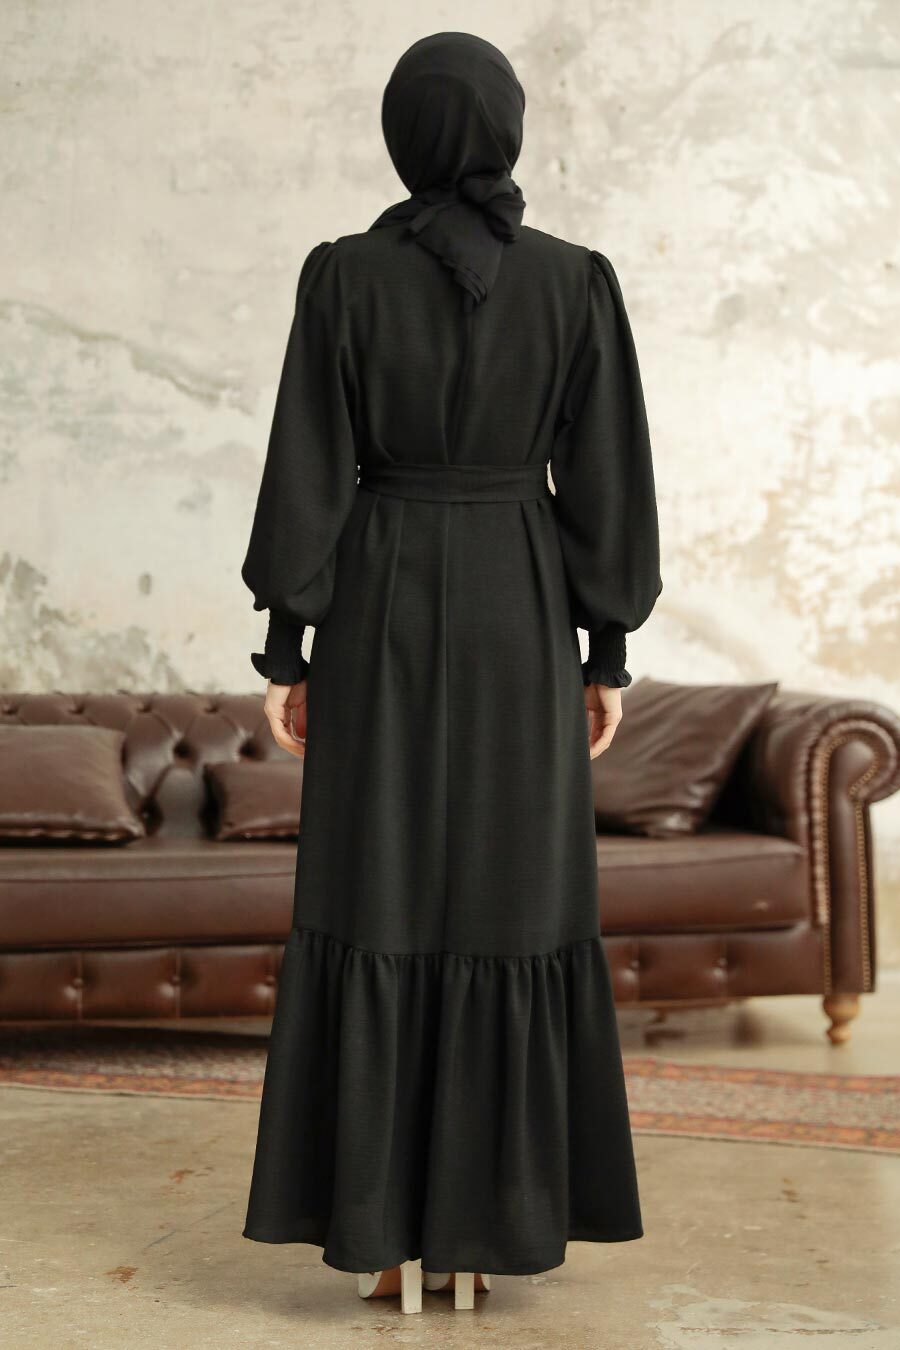 Neva Style - Etek Ucu Volanlı Siyah Tesettür Elbise 5972S